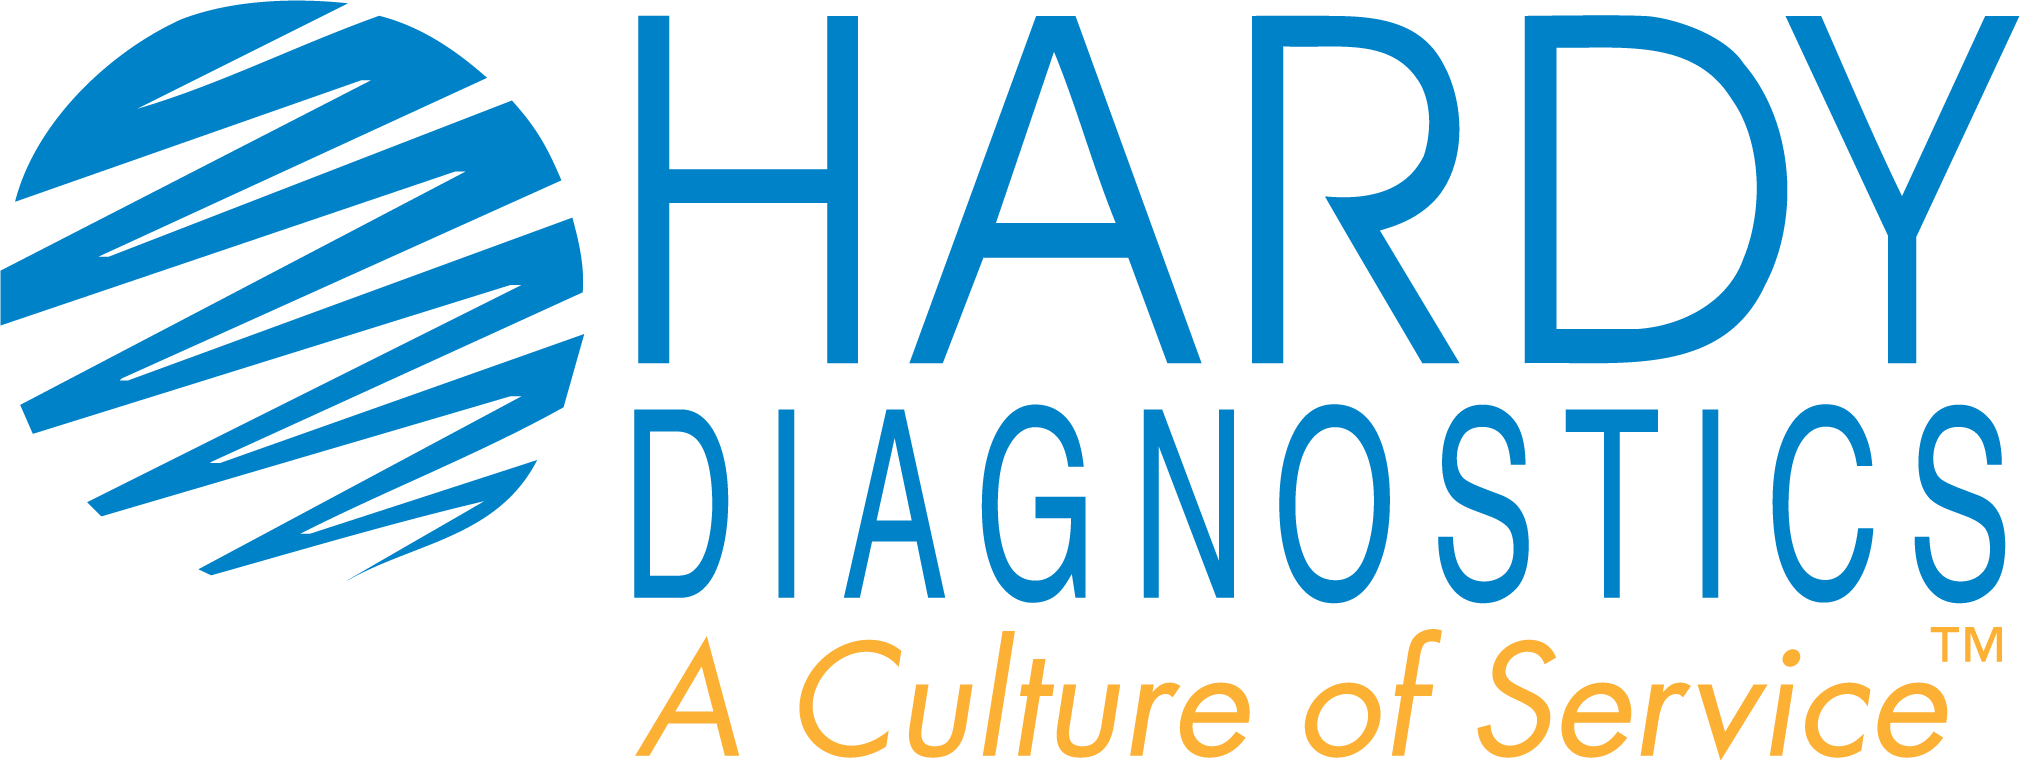 Hardy-Diagnostics-Logo_original.png